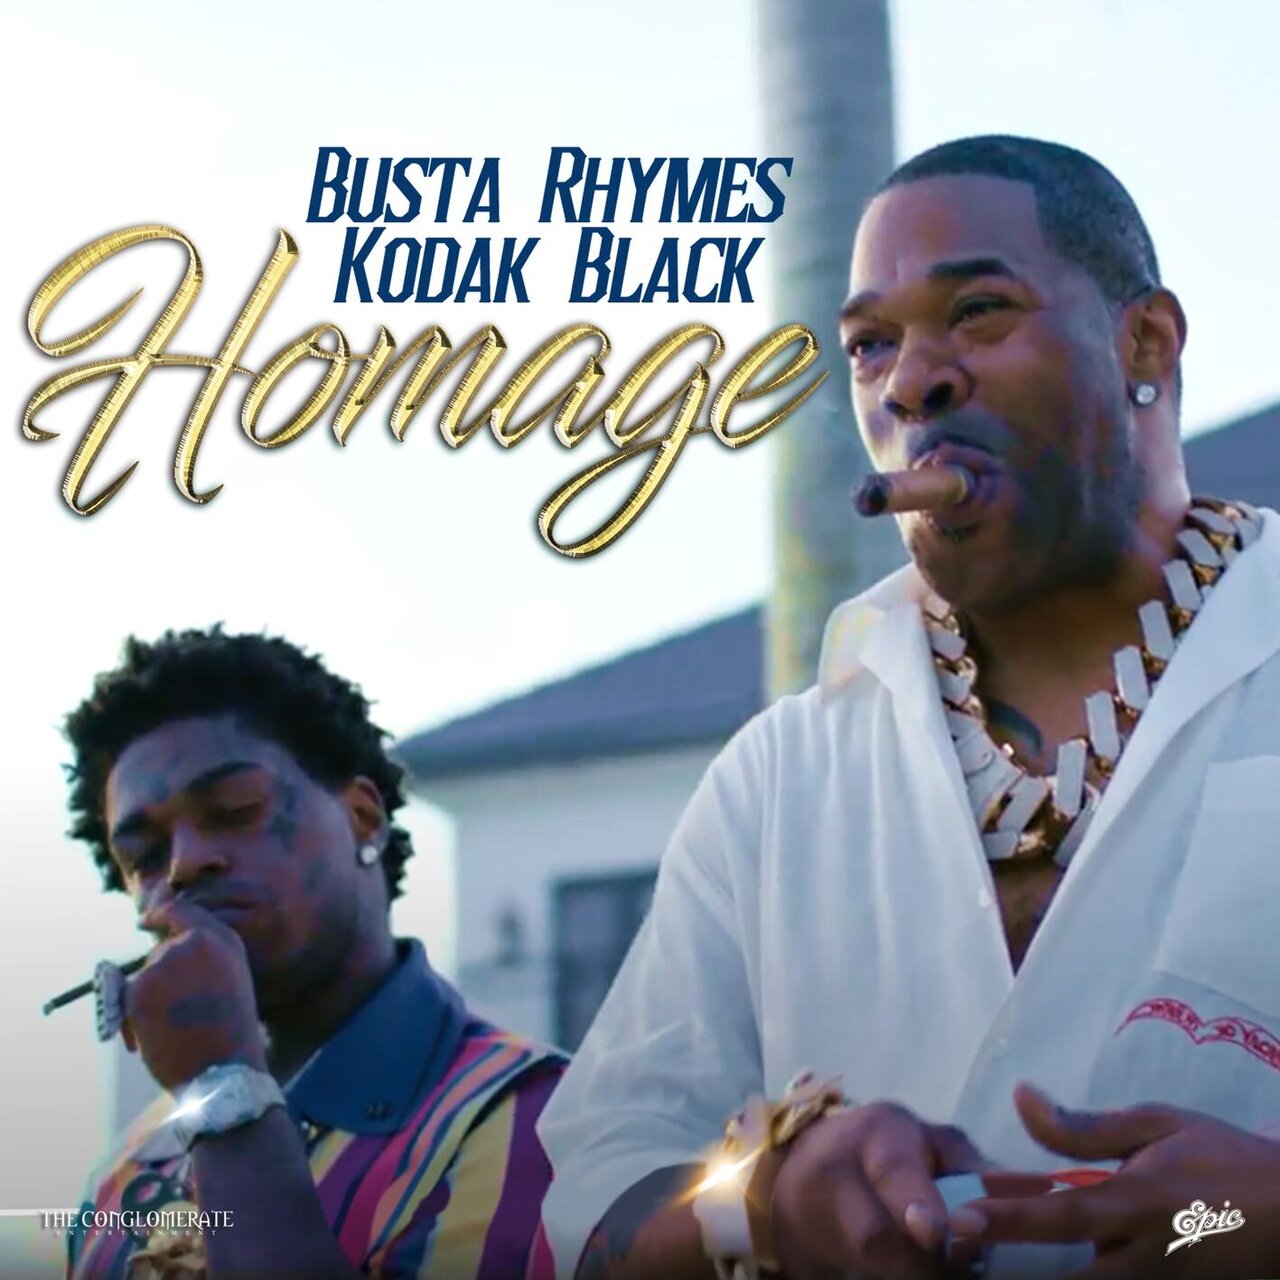 Busta Rhymes - Homage (ft. Kodak Black) (Cover)